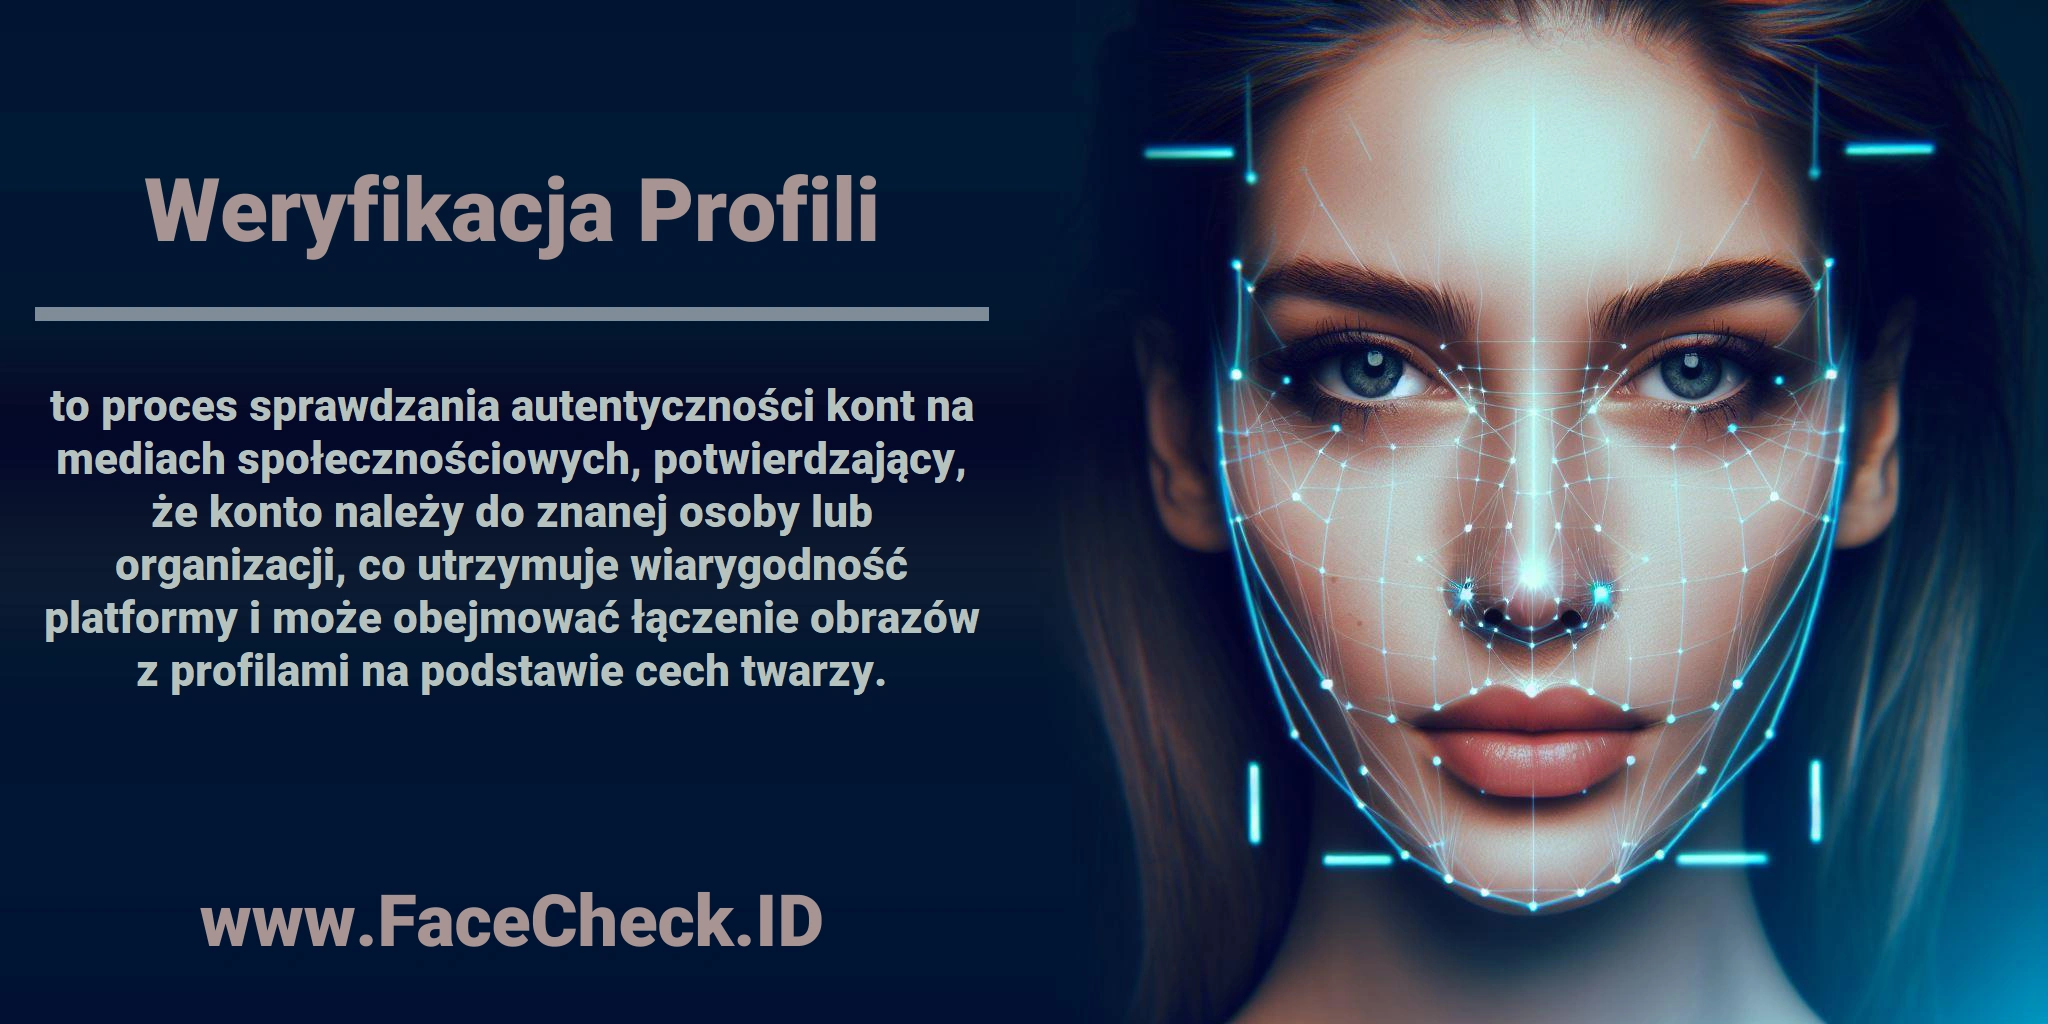 <b>Weryfikacja Profili</b> to proces sprawdzania autentyczności kont na mediach społecznościowych, potwierdzający, że konto należy do znanej osoby lub organizacji, co utrzymuje wiarygodność platformy i może obejmować łączenie obrazów z profilami na podstawie cech twarzy.